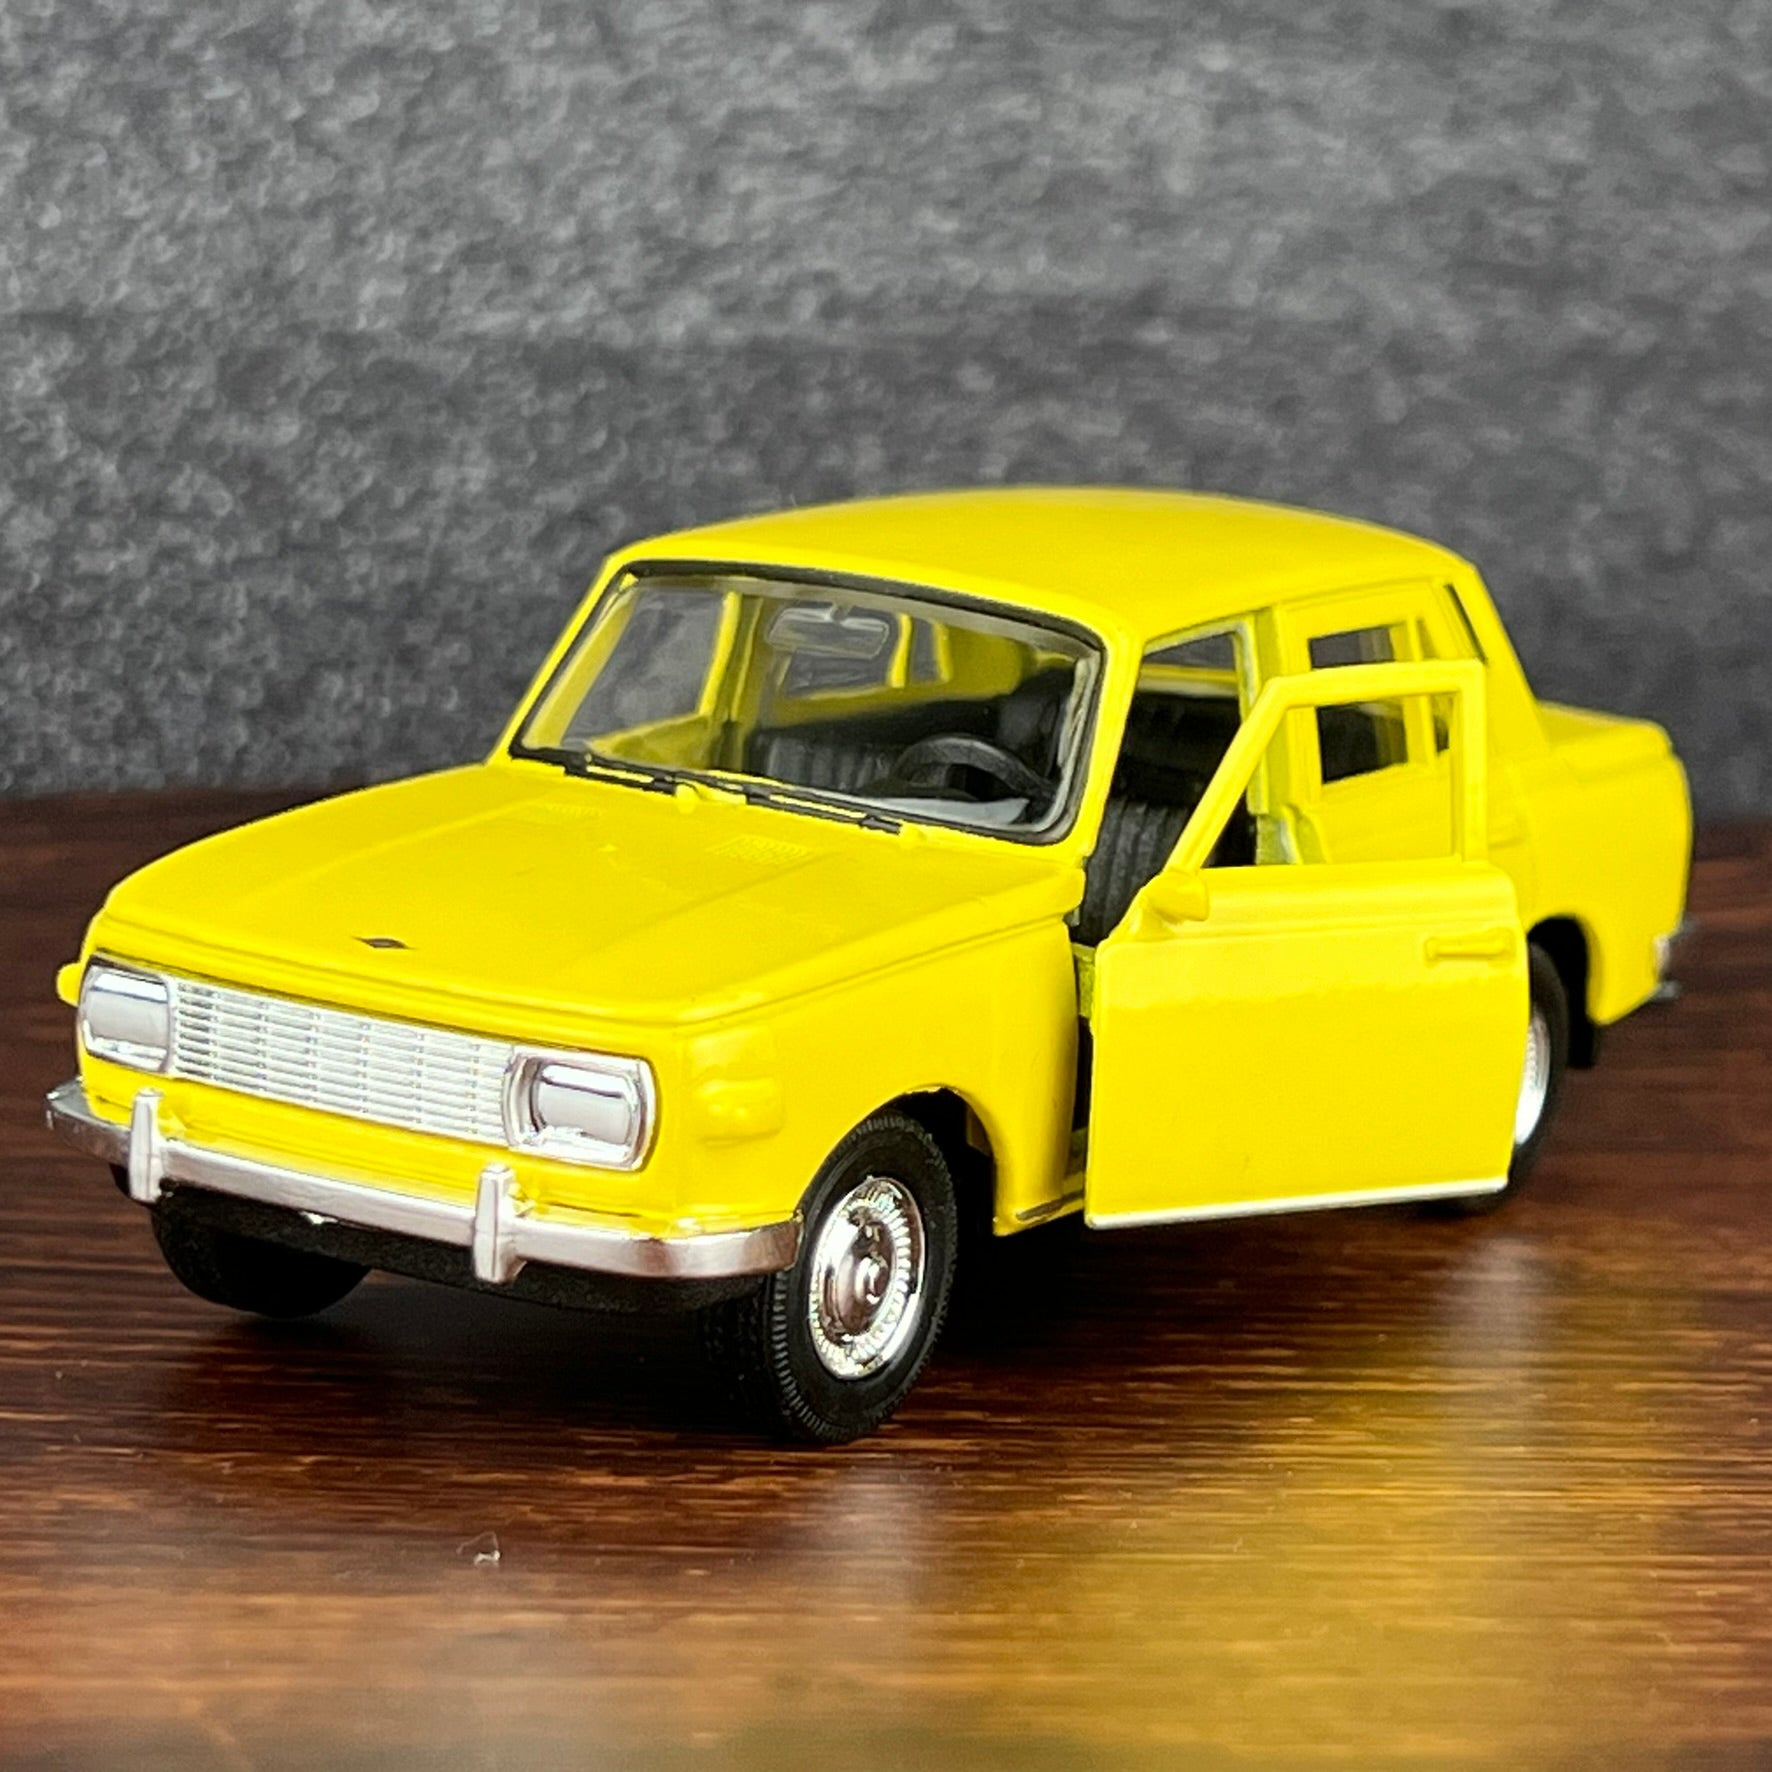 Wartburg Limousine Modellauto, gelb, 10cm lang, Aufziehfunktion, bewegliche Teile